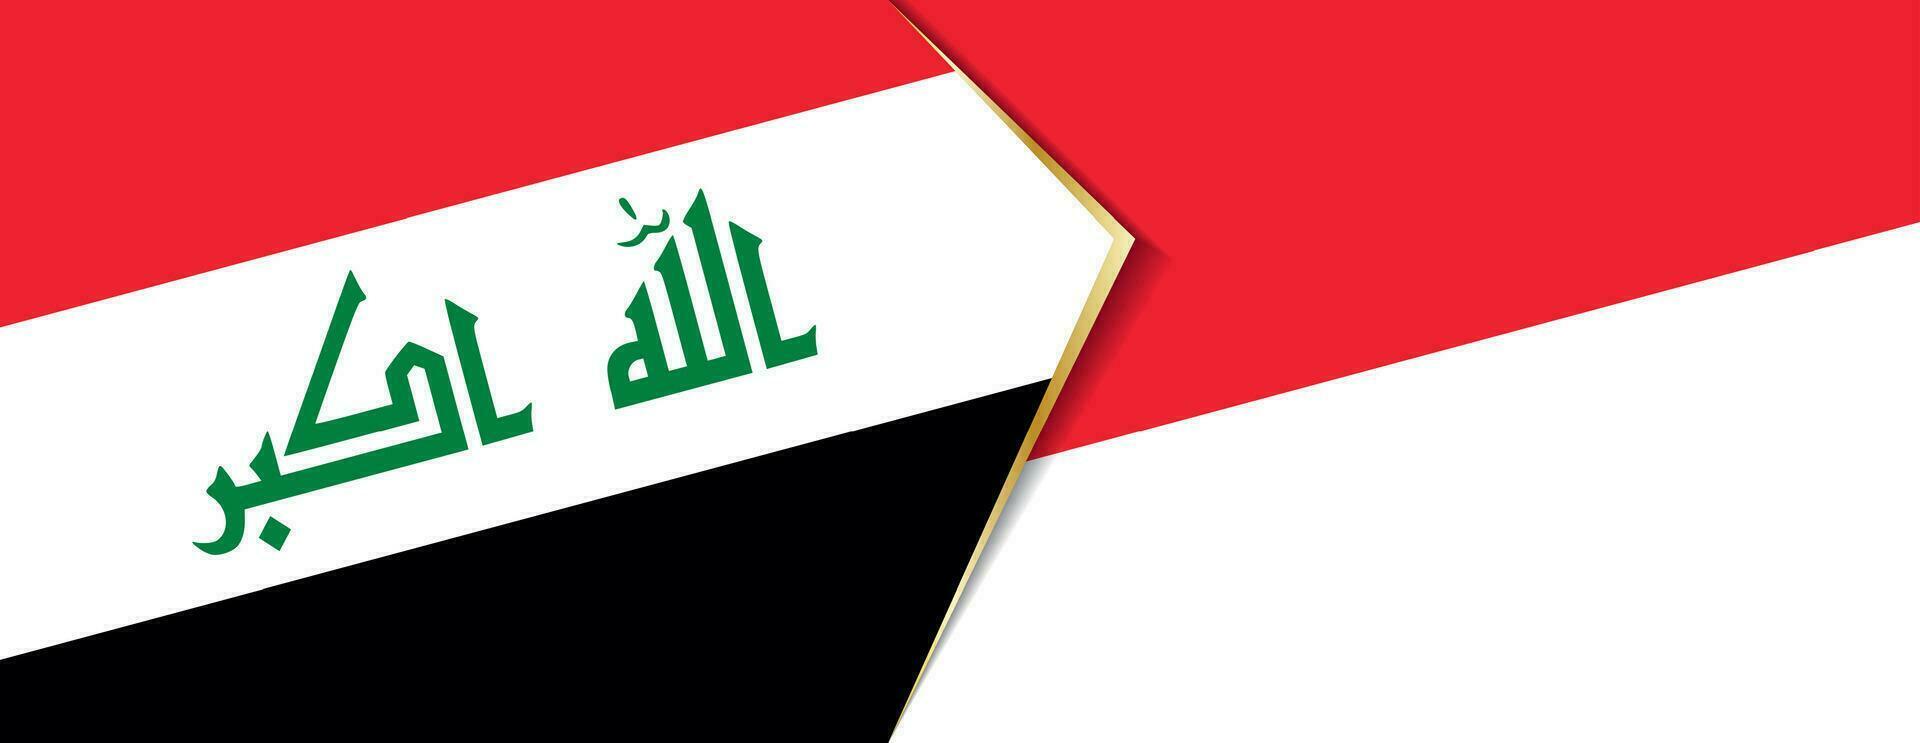 Irak et Indonésie drapeaux, deux vecteur drapeaux.